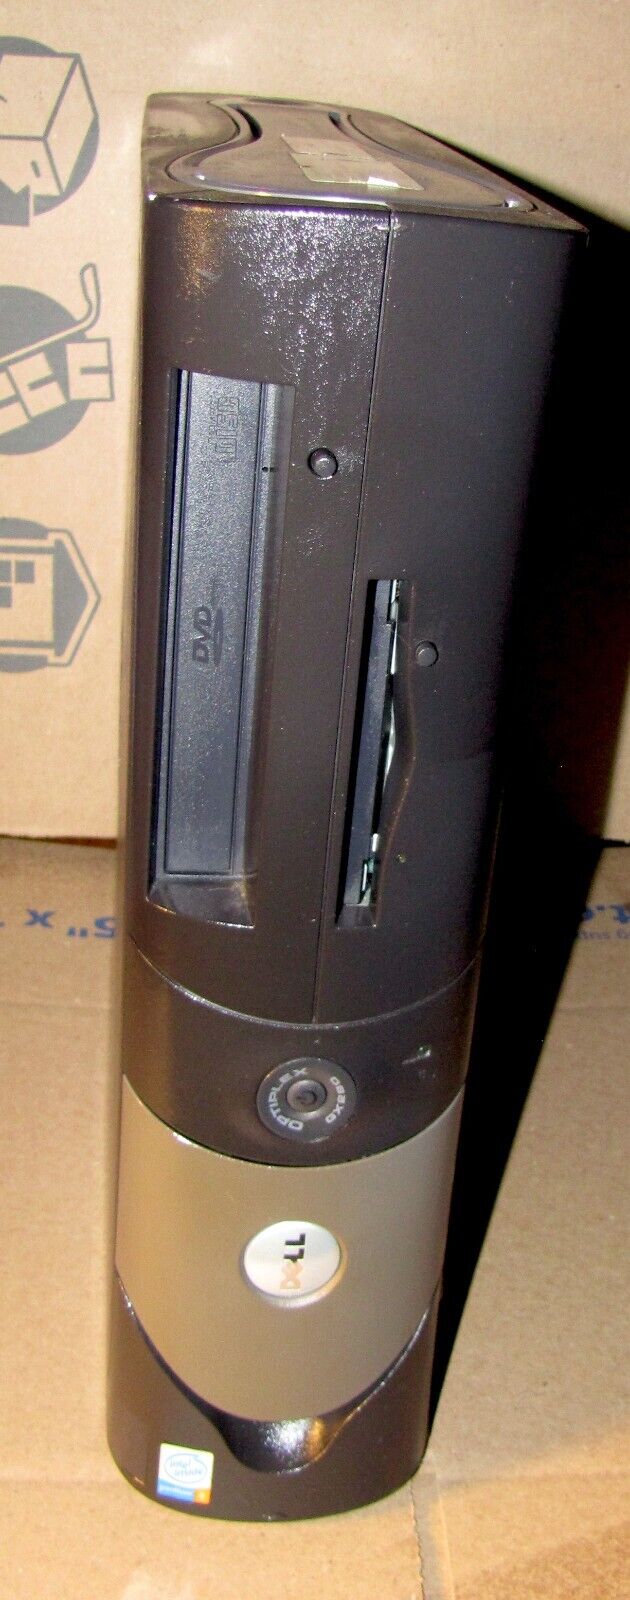 Dell Optiplex GX280 80GB 2GB Intel 2.8GHZ Pentium 4 Windows XP MS Office PC